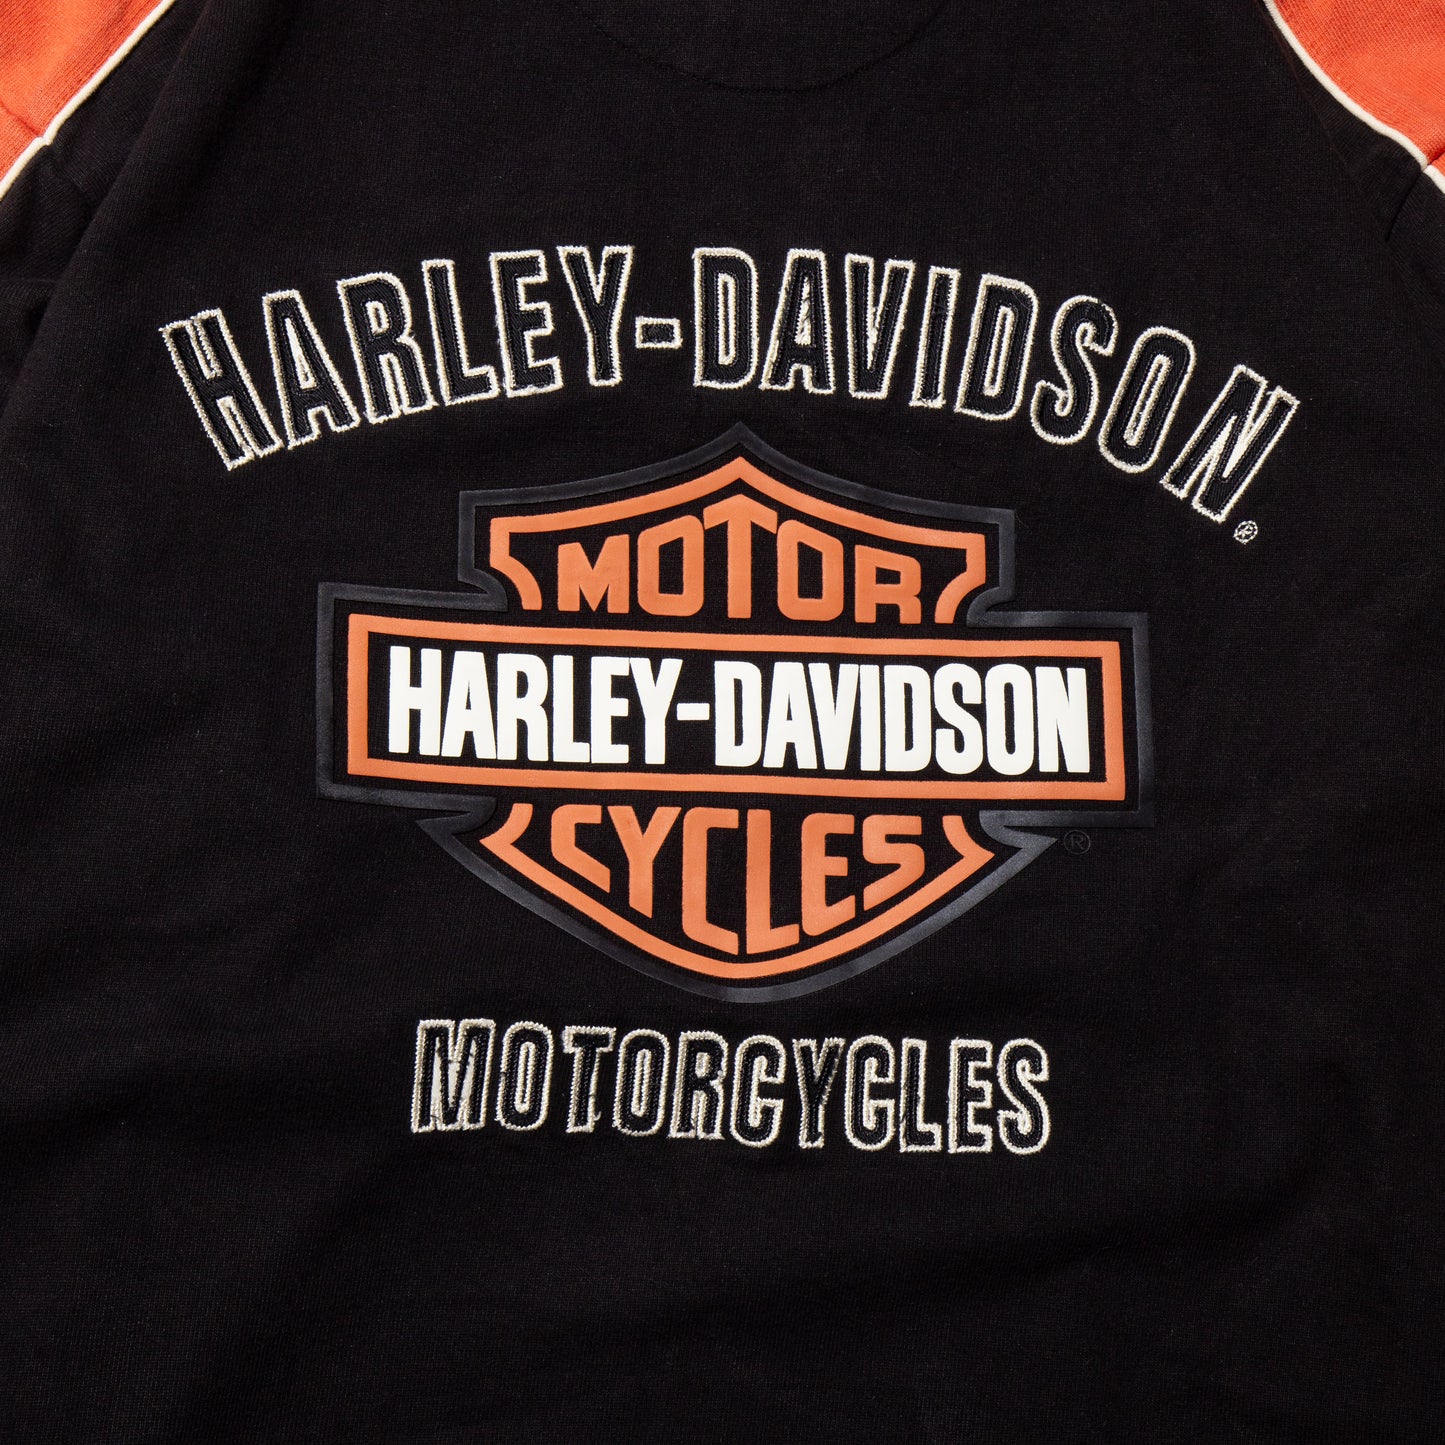 vintage harley davidson sweat shirt